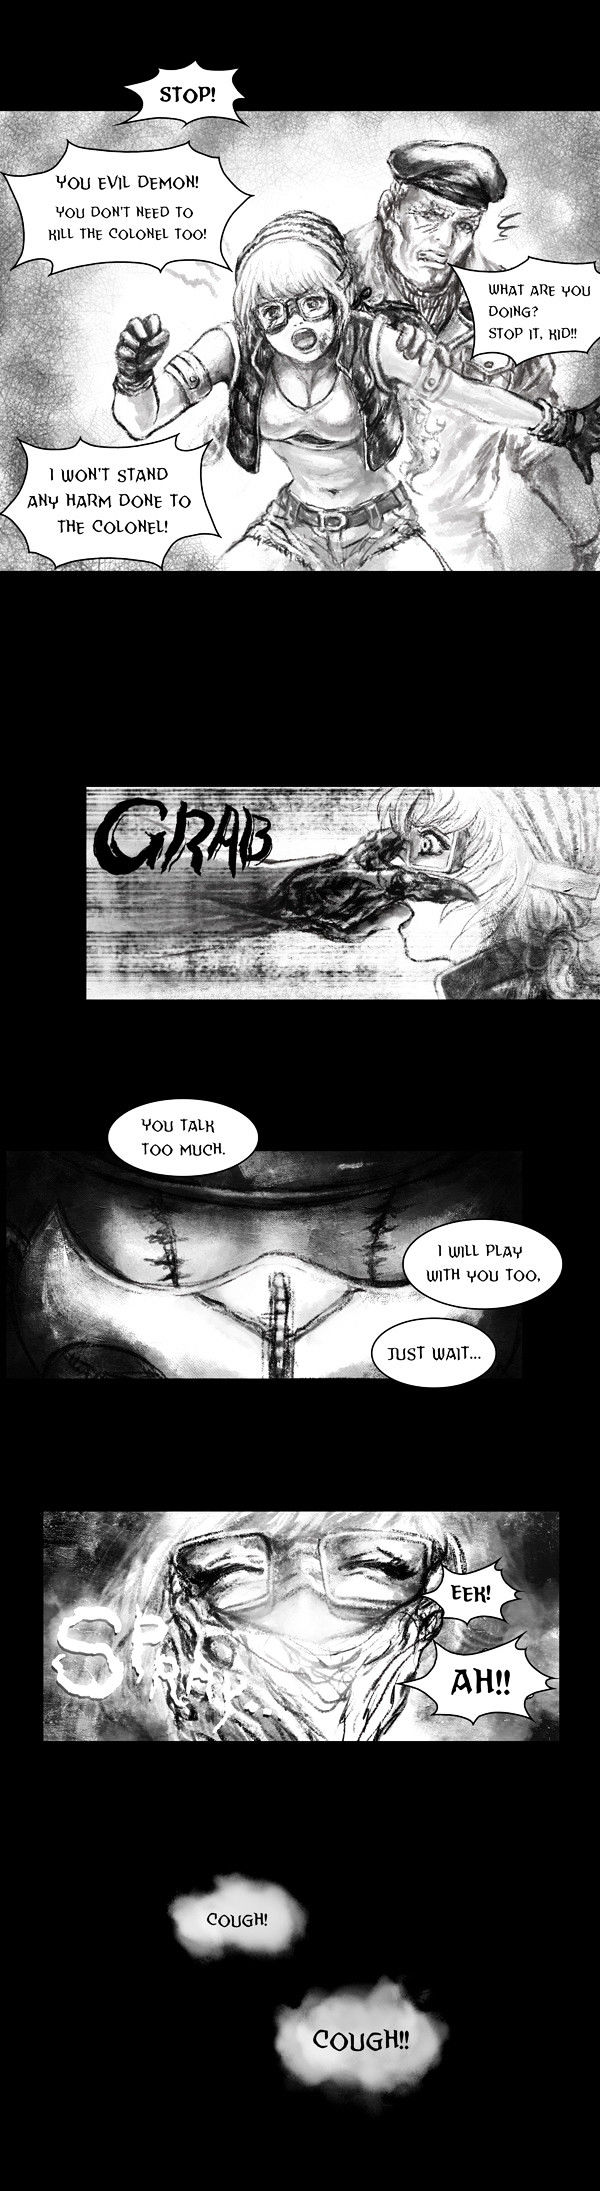 Deadbrain - Page 3